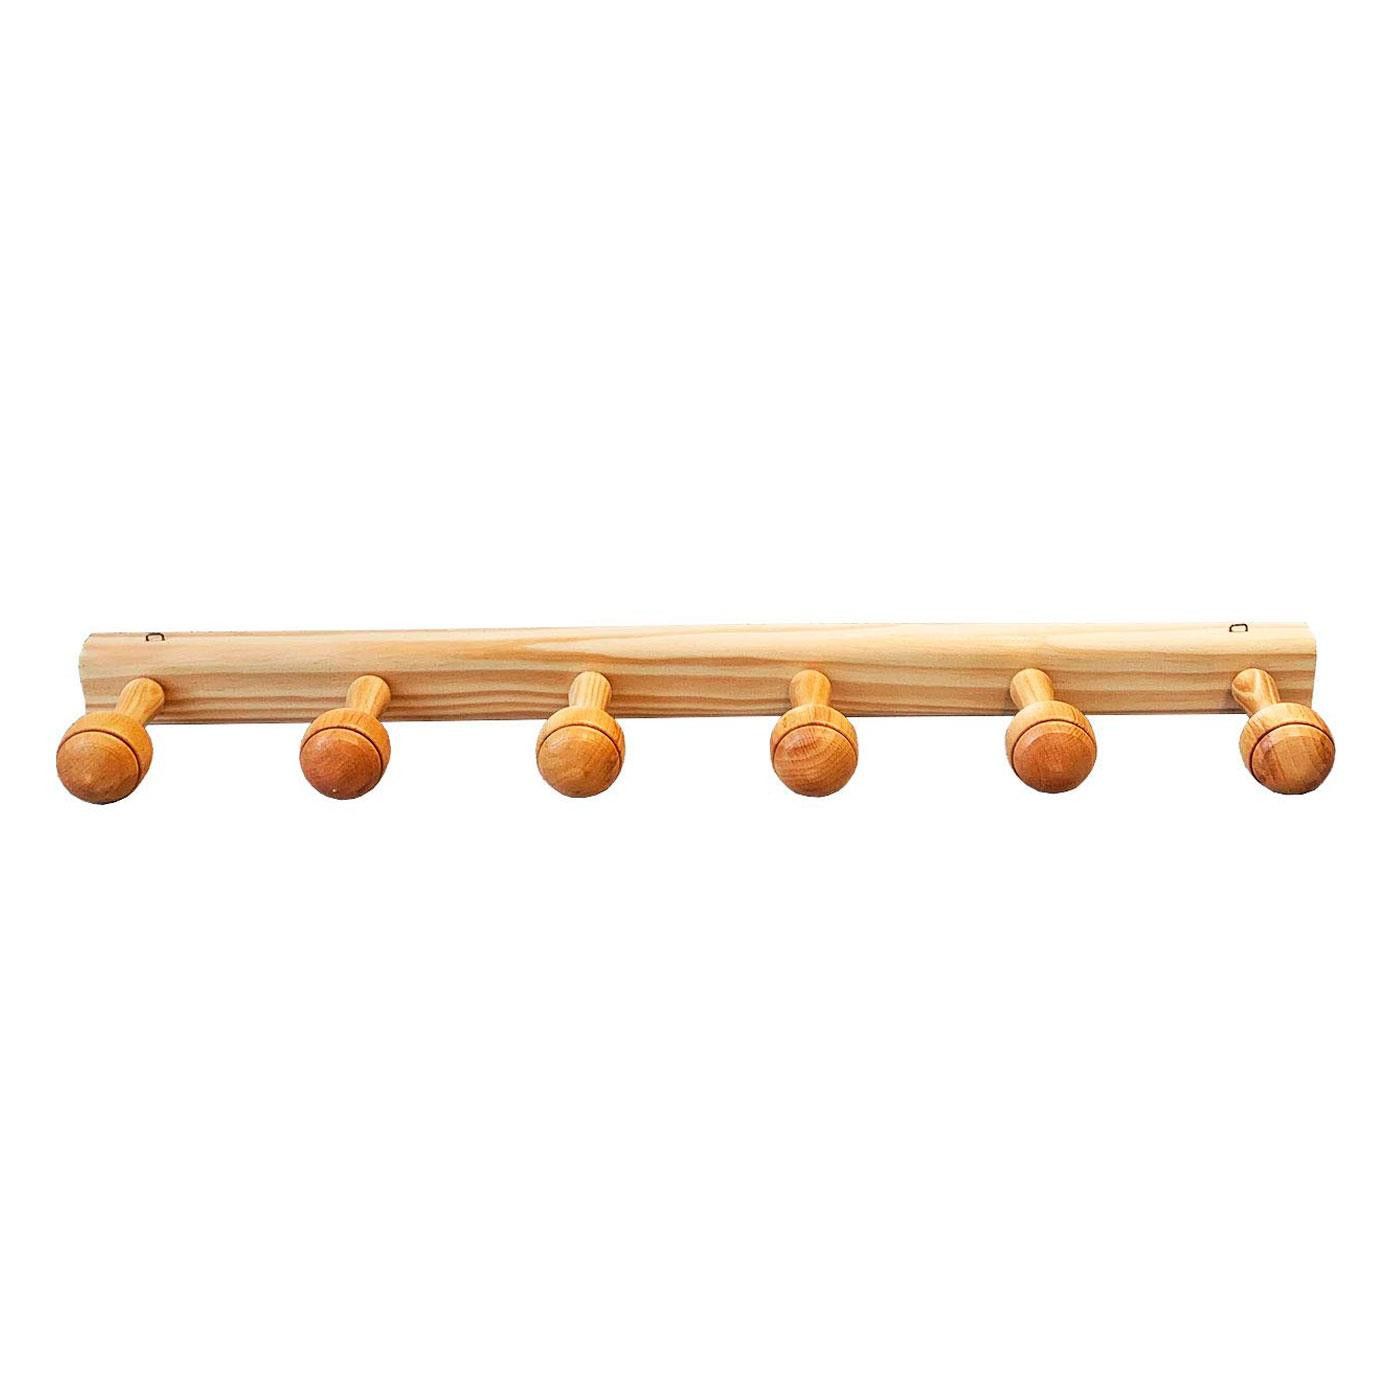 Tradineur - Portarrollos de madera para papel de cocina 28,5 x 12,5 cm,  soporte vertical para rollo de papel, diámetro del palo